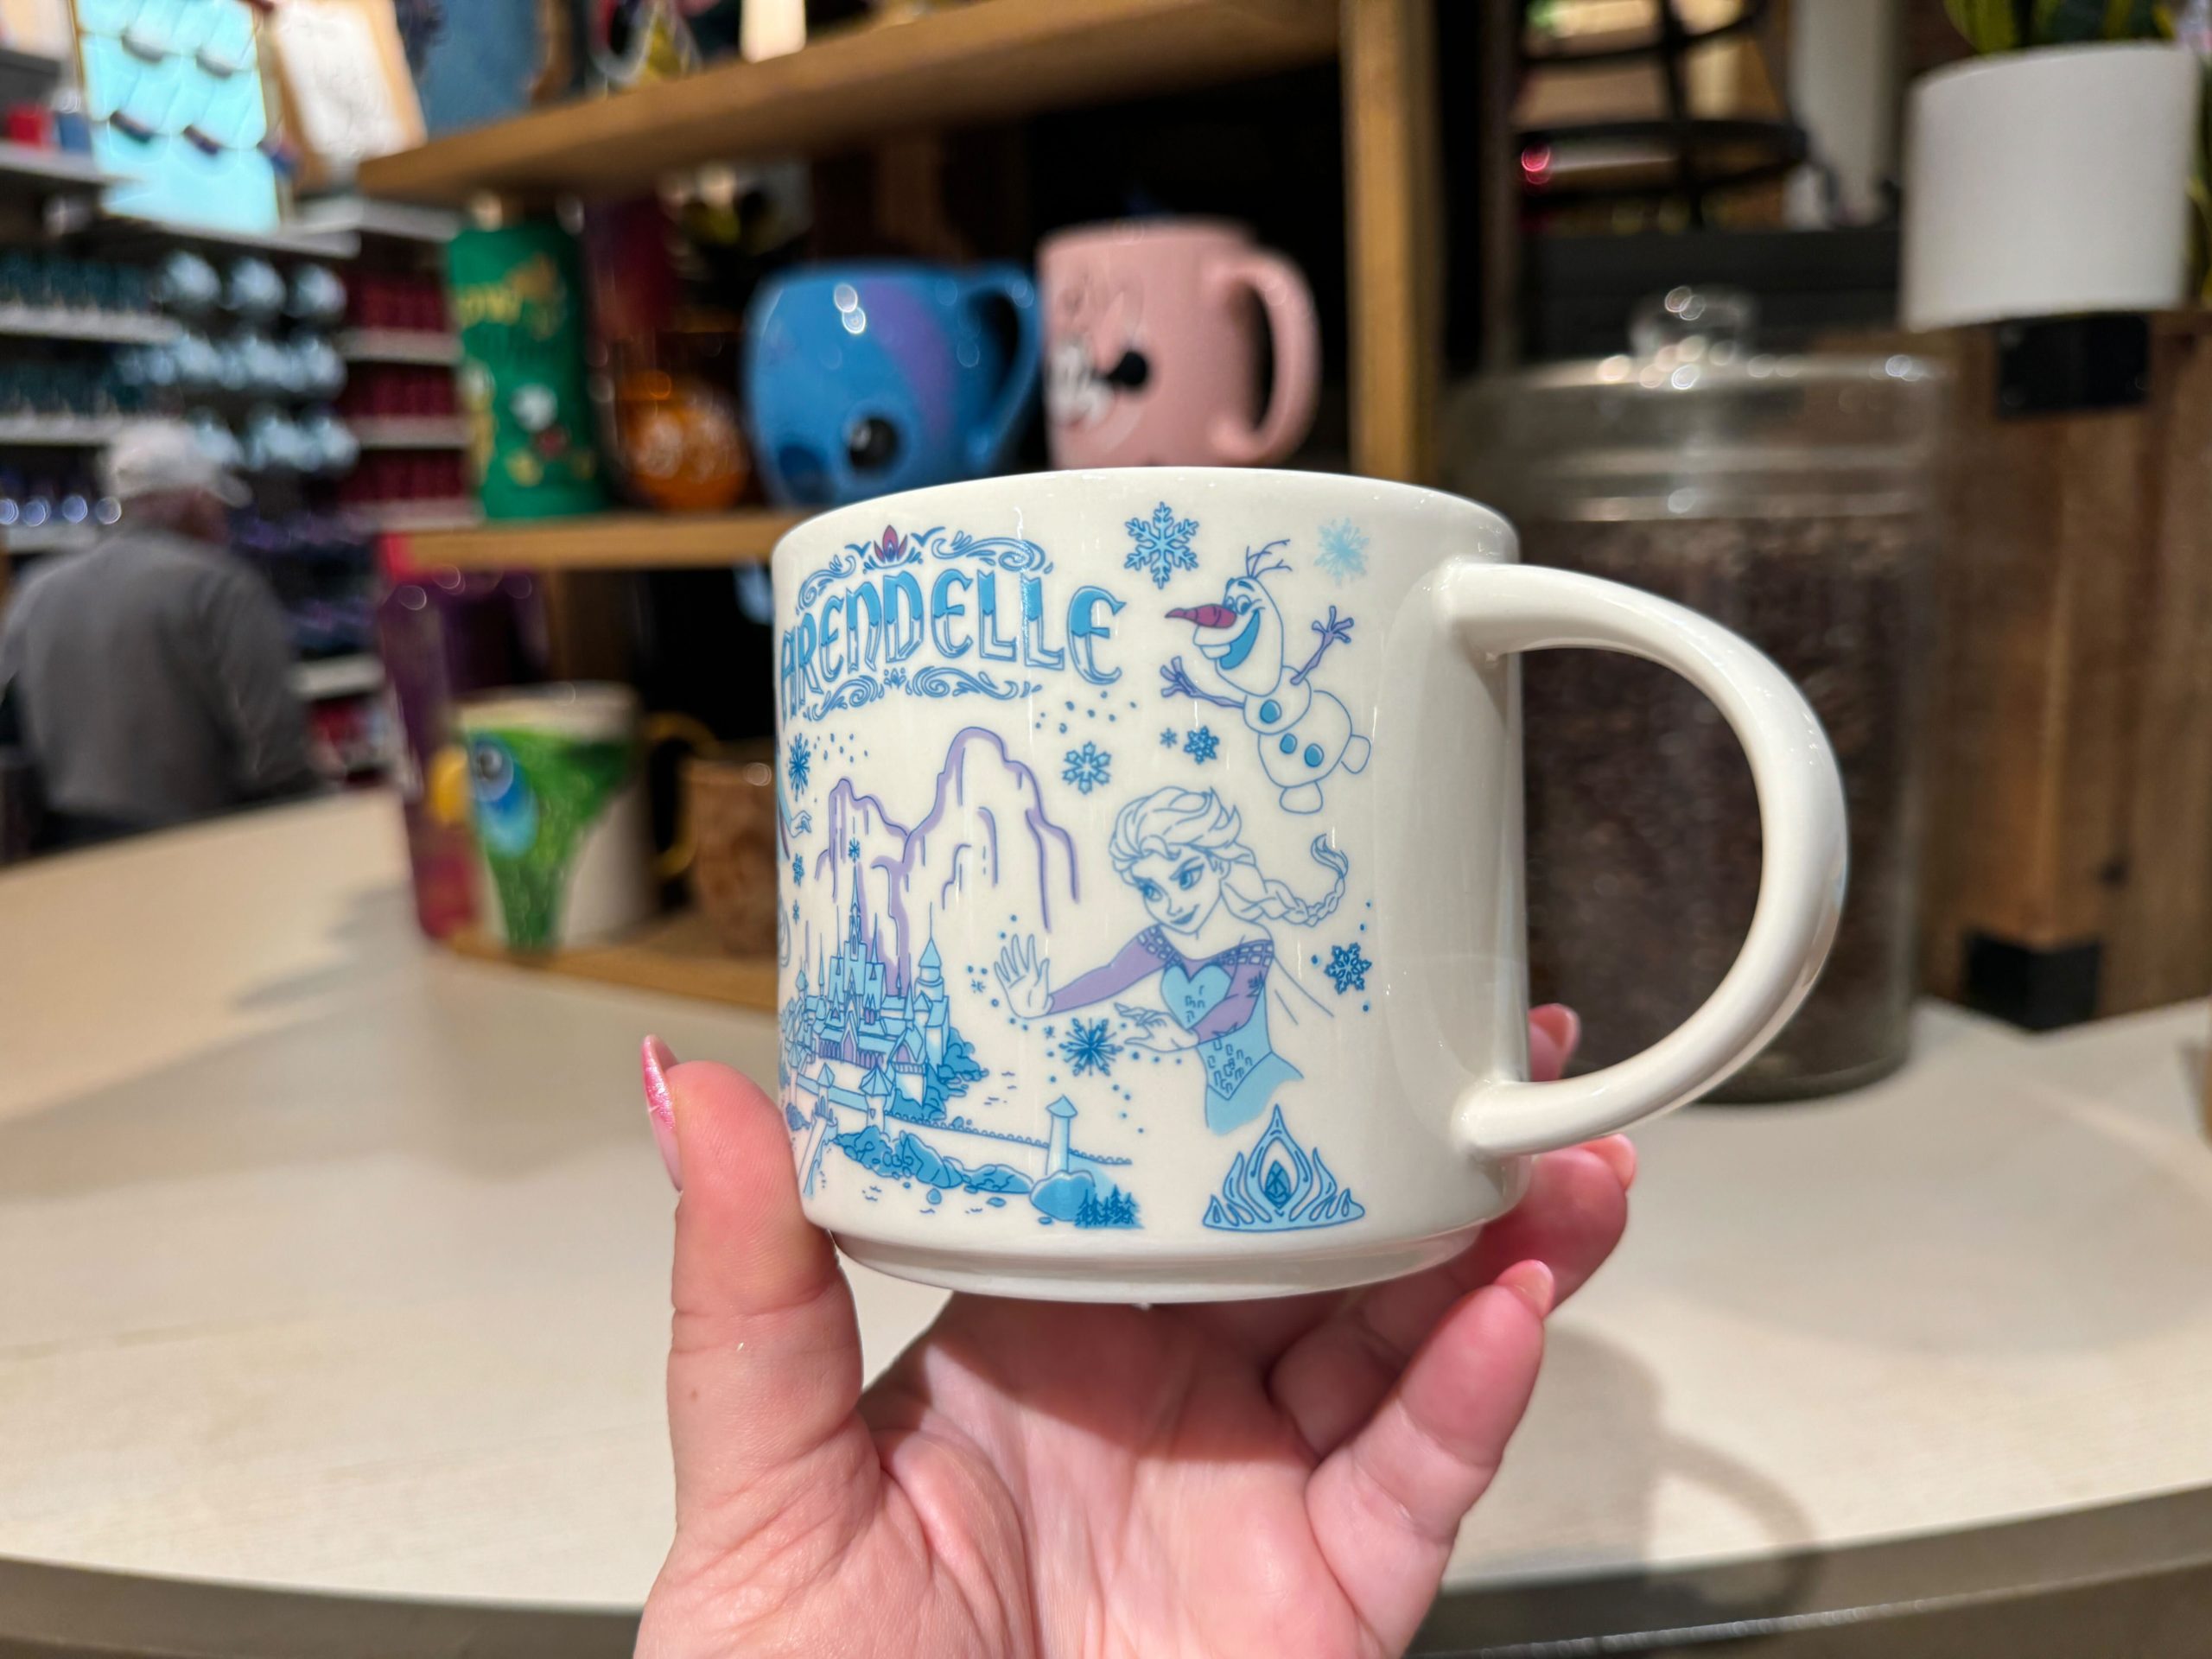 https://mickeyblog.com/wp-content/uploads/2024/01/Starbucks-Arendelle-Frozen-mug-6-scaled.jpg